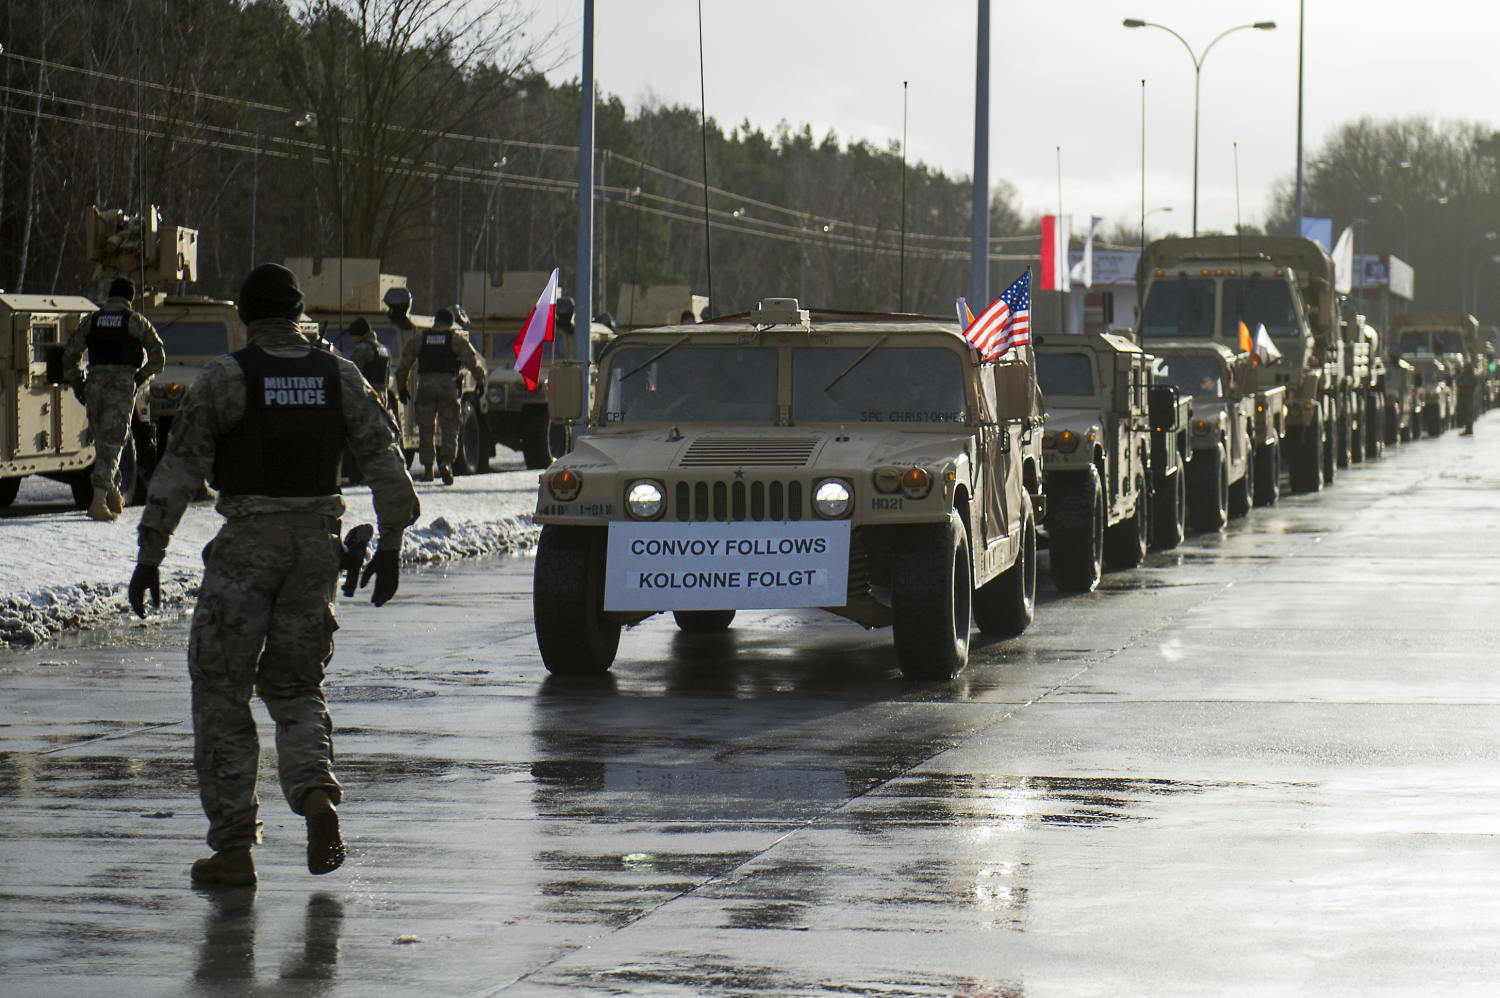 Llega a Polonia el mayor convoy de fuerzas norteamericanas en Europa desde el fin de la Guerra Fría